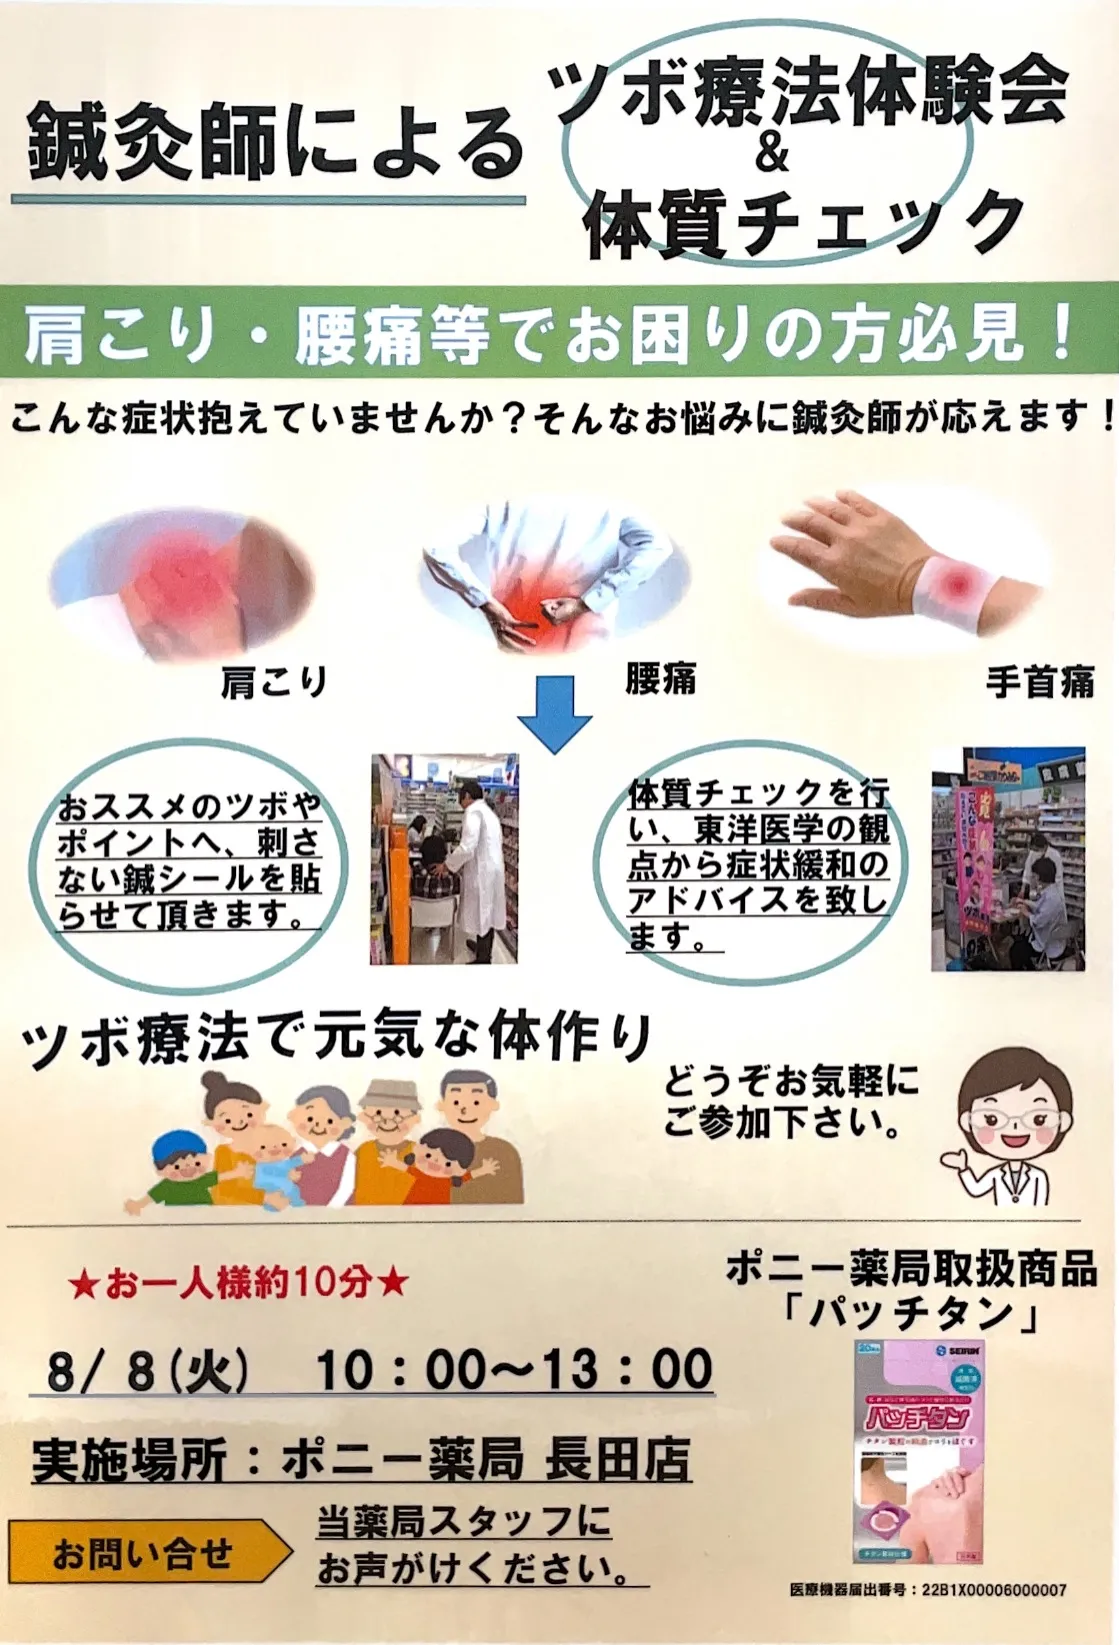 神戸と三木にある薬局のイベント開催のお知らせです。